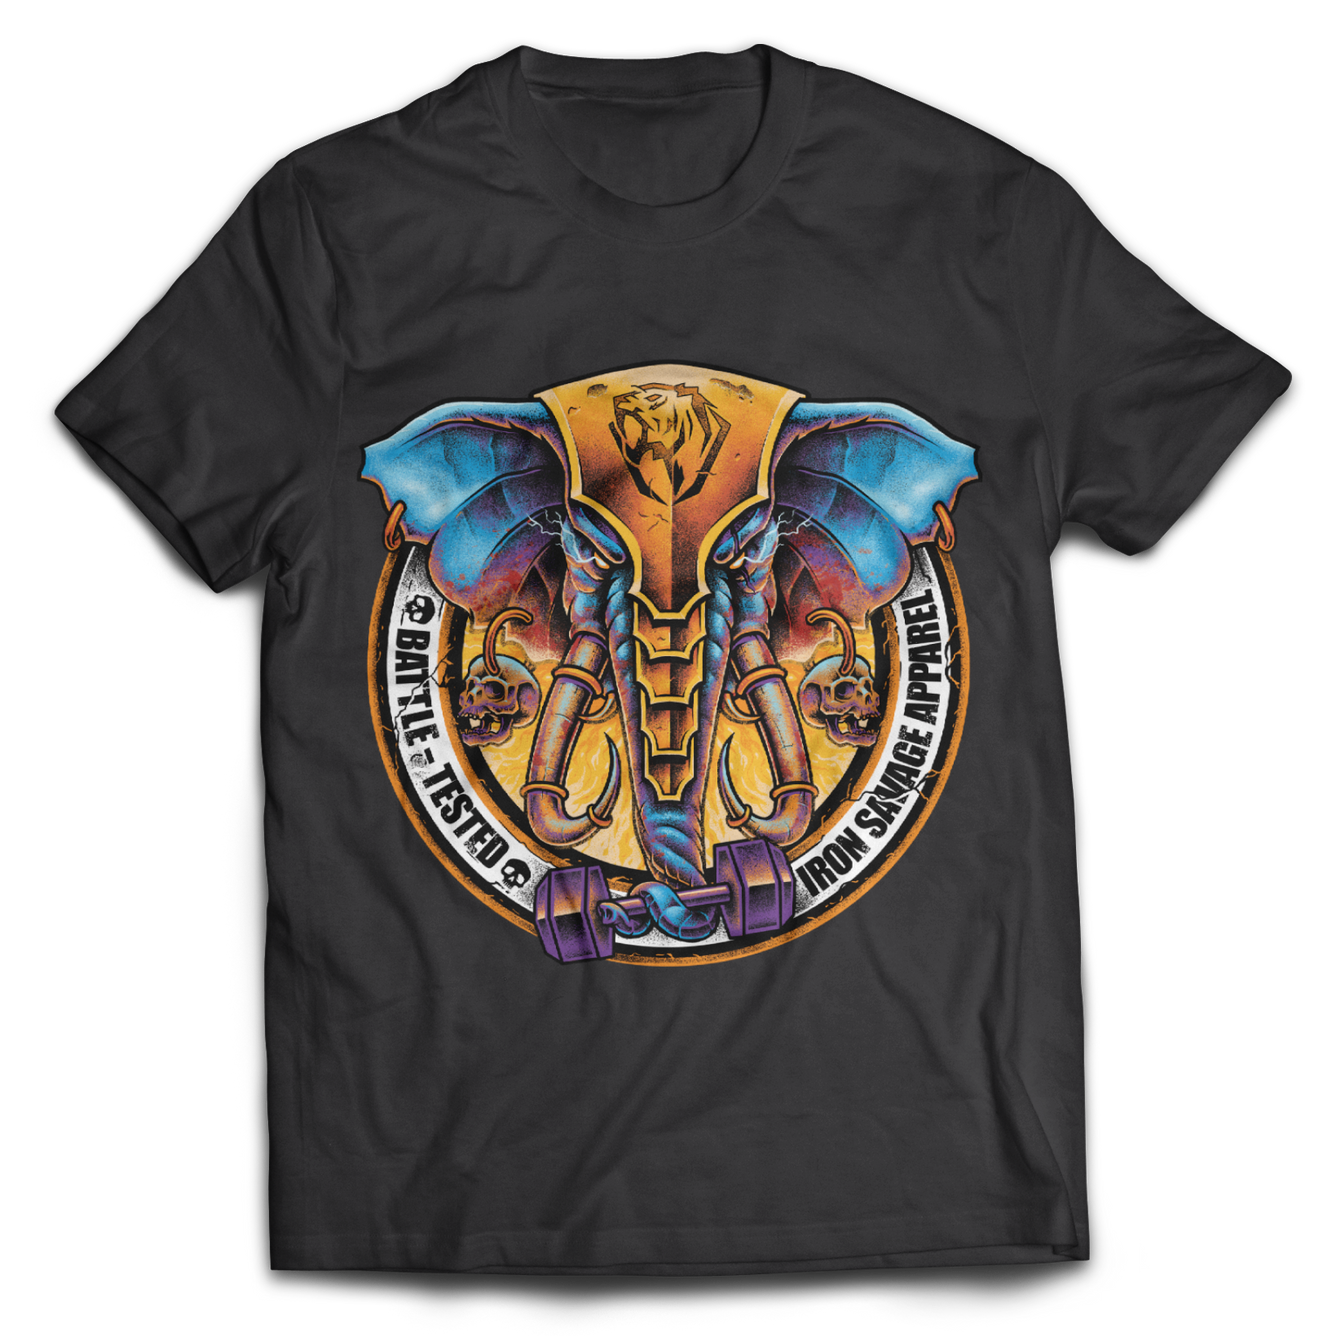 Elephant: Battle Tested T-shirt